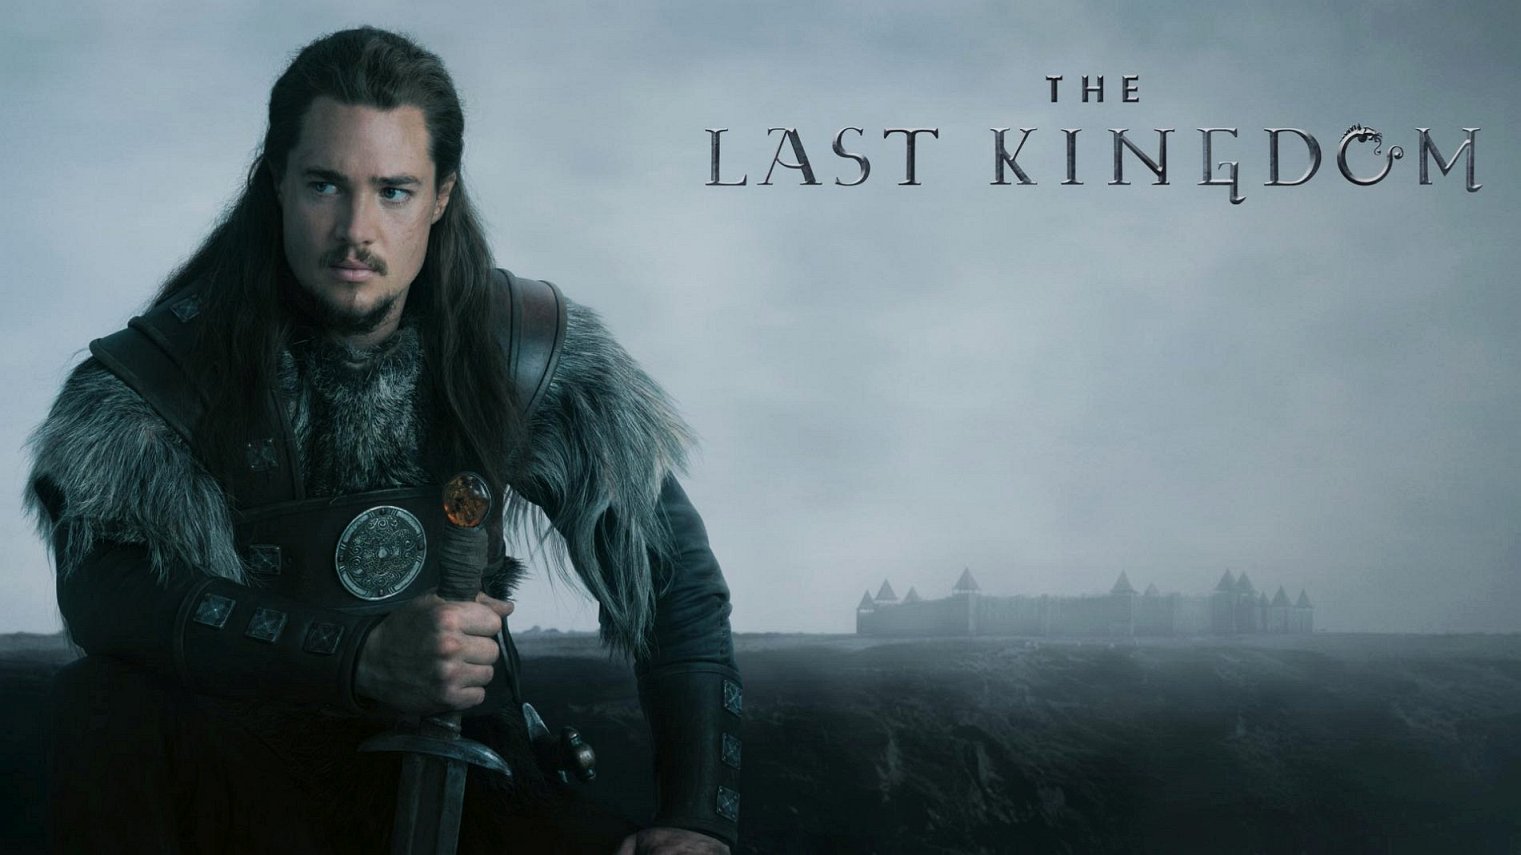 cast of The Last Kingdom season 1